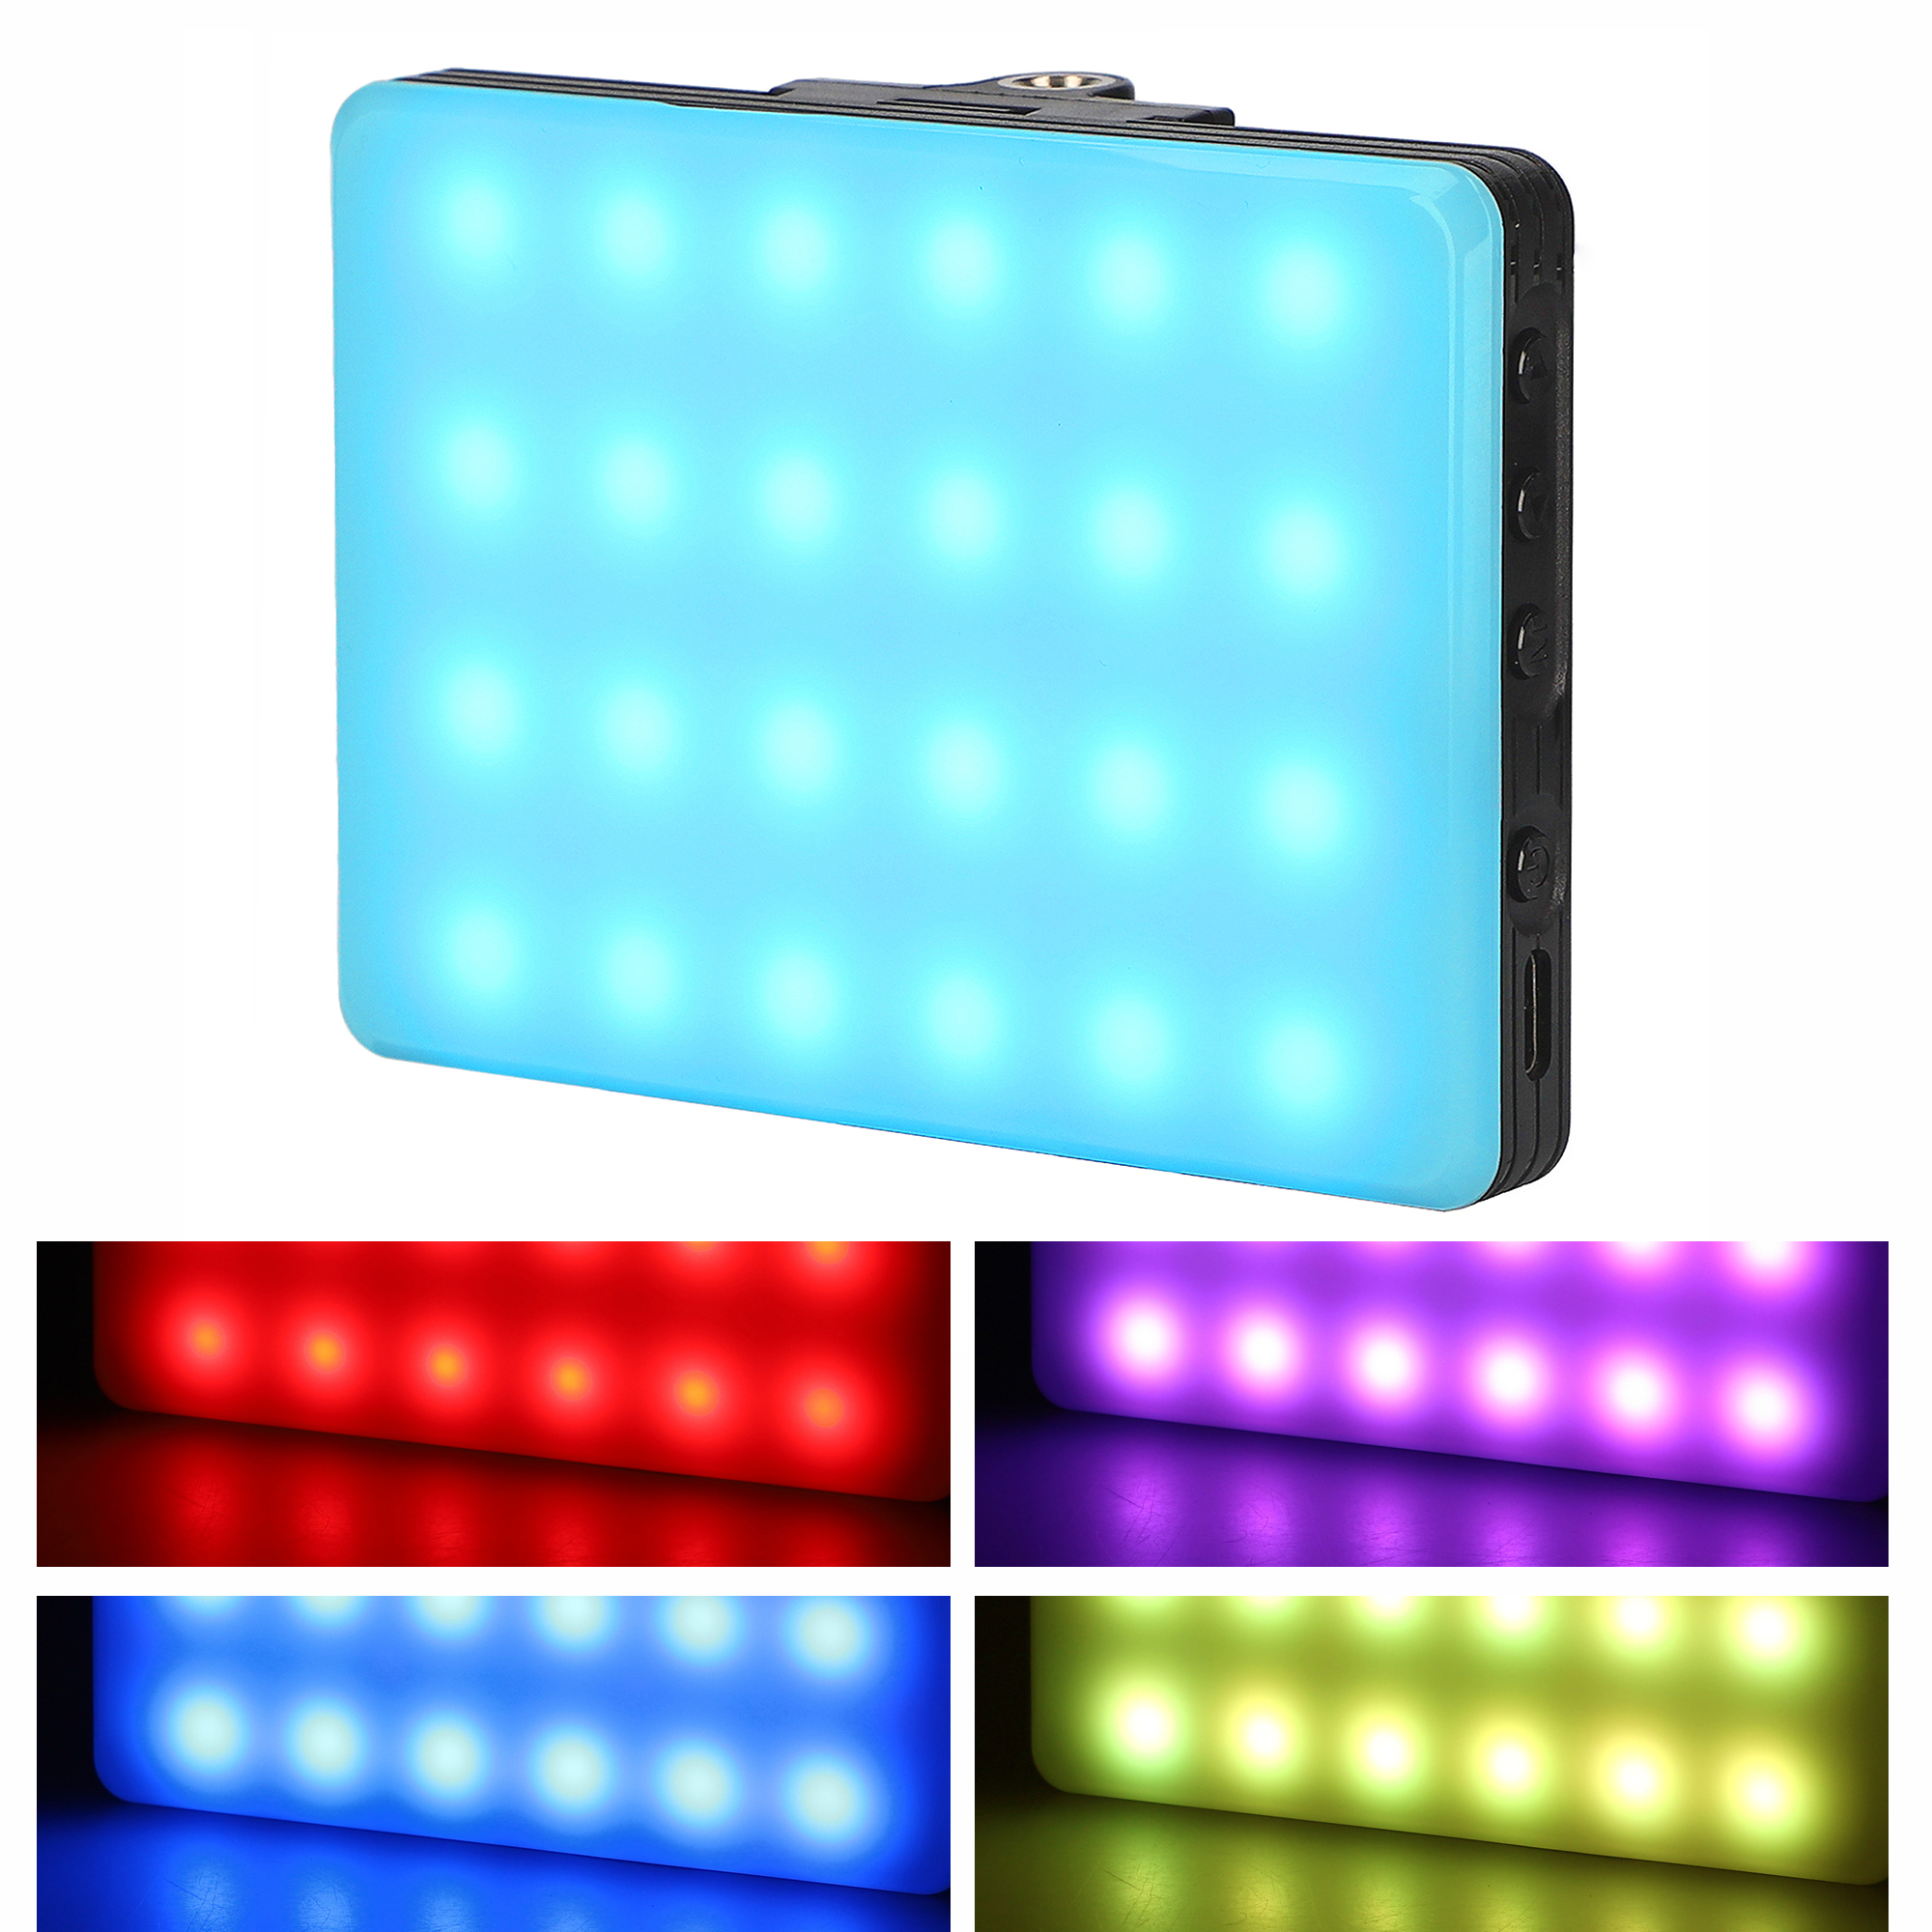 ayex LED Leuchte Perfekte Ambiente durch RGB Ausleuchtung von Fotos und Videos, Pocket size USB Type-C ladbar